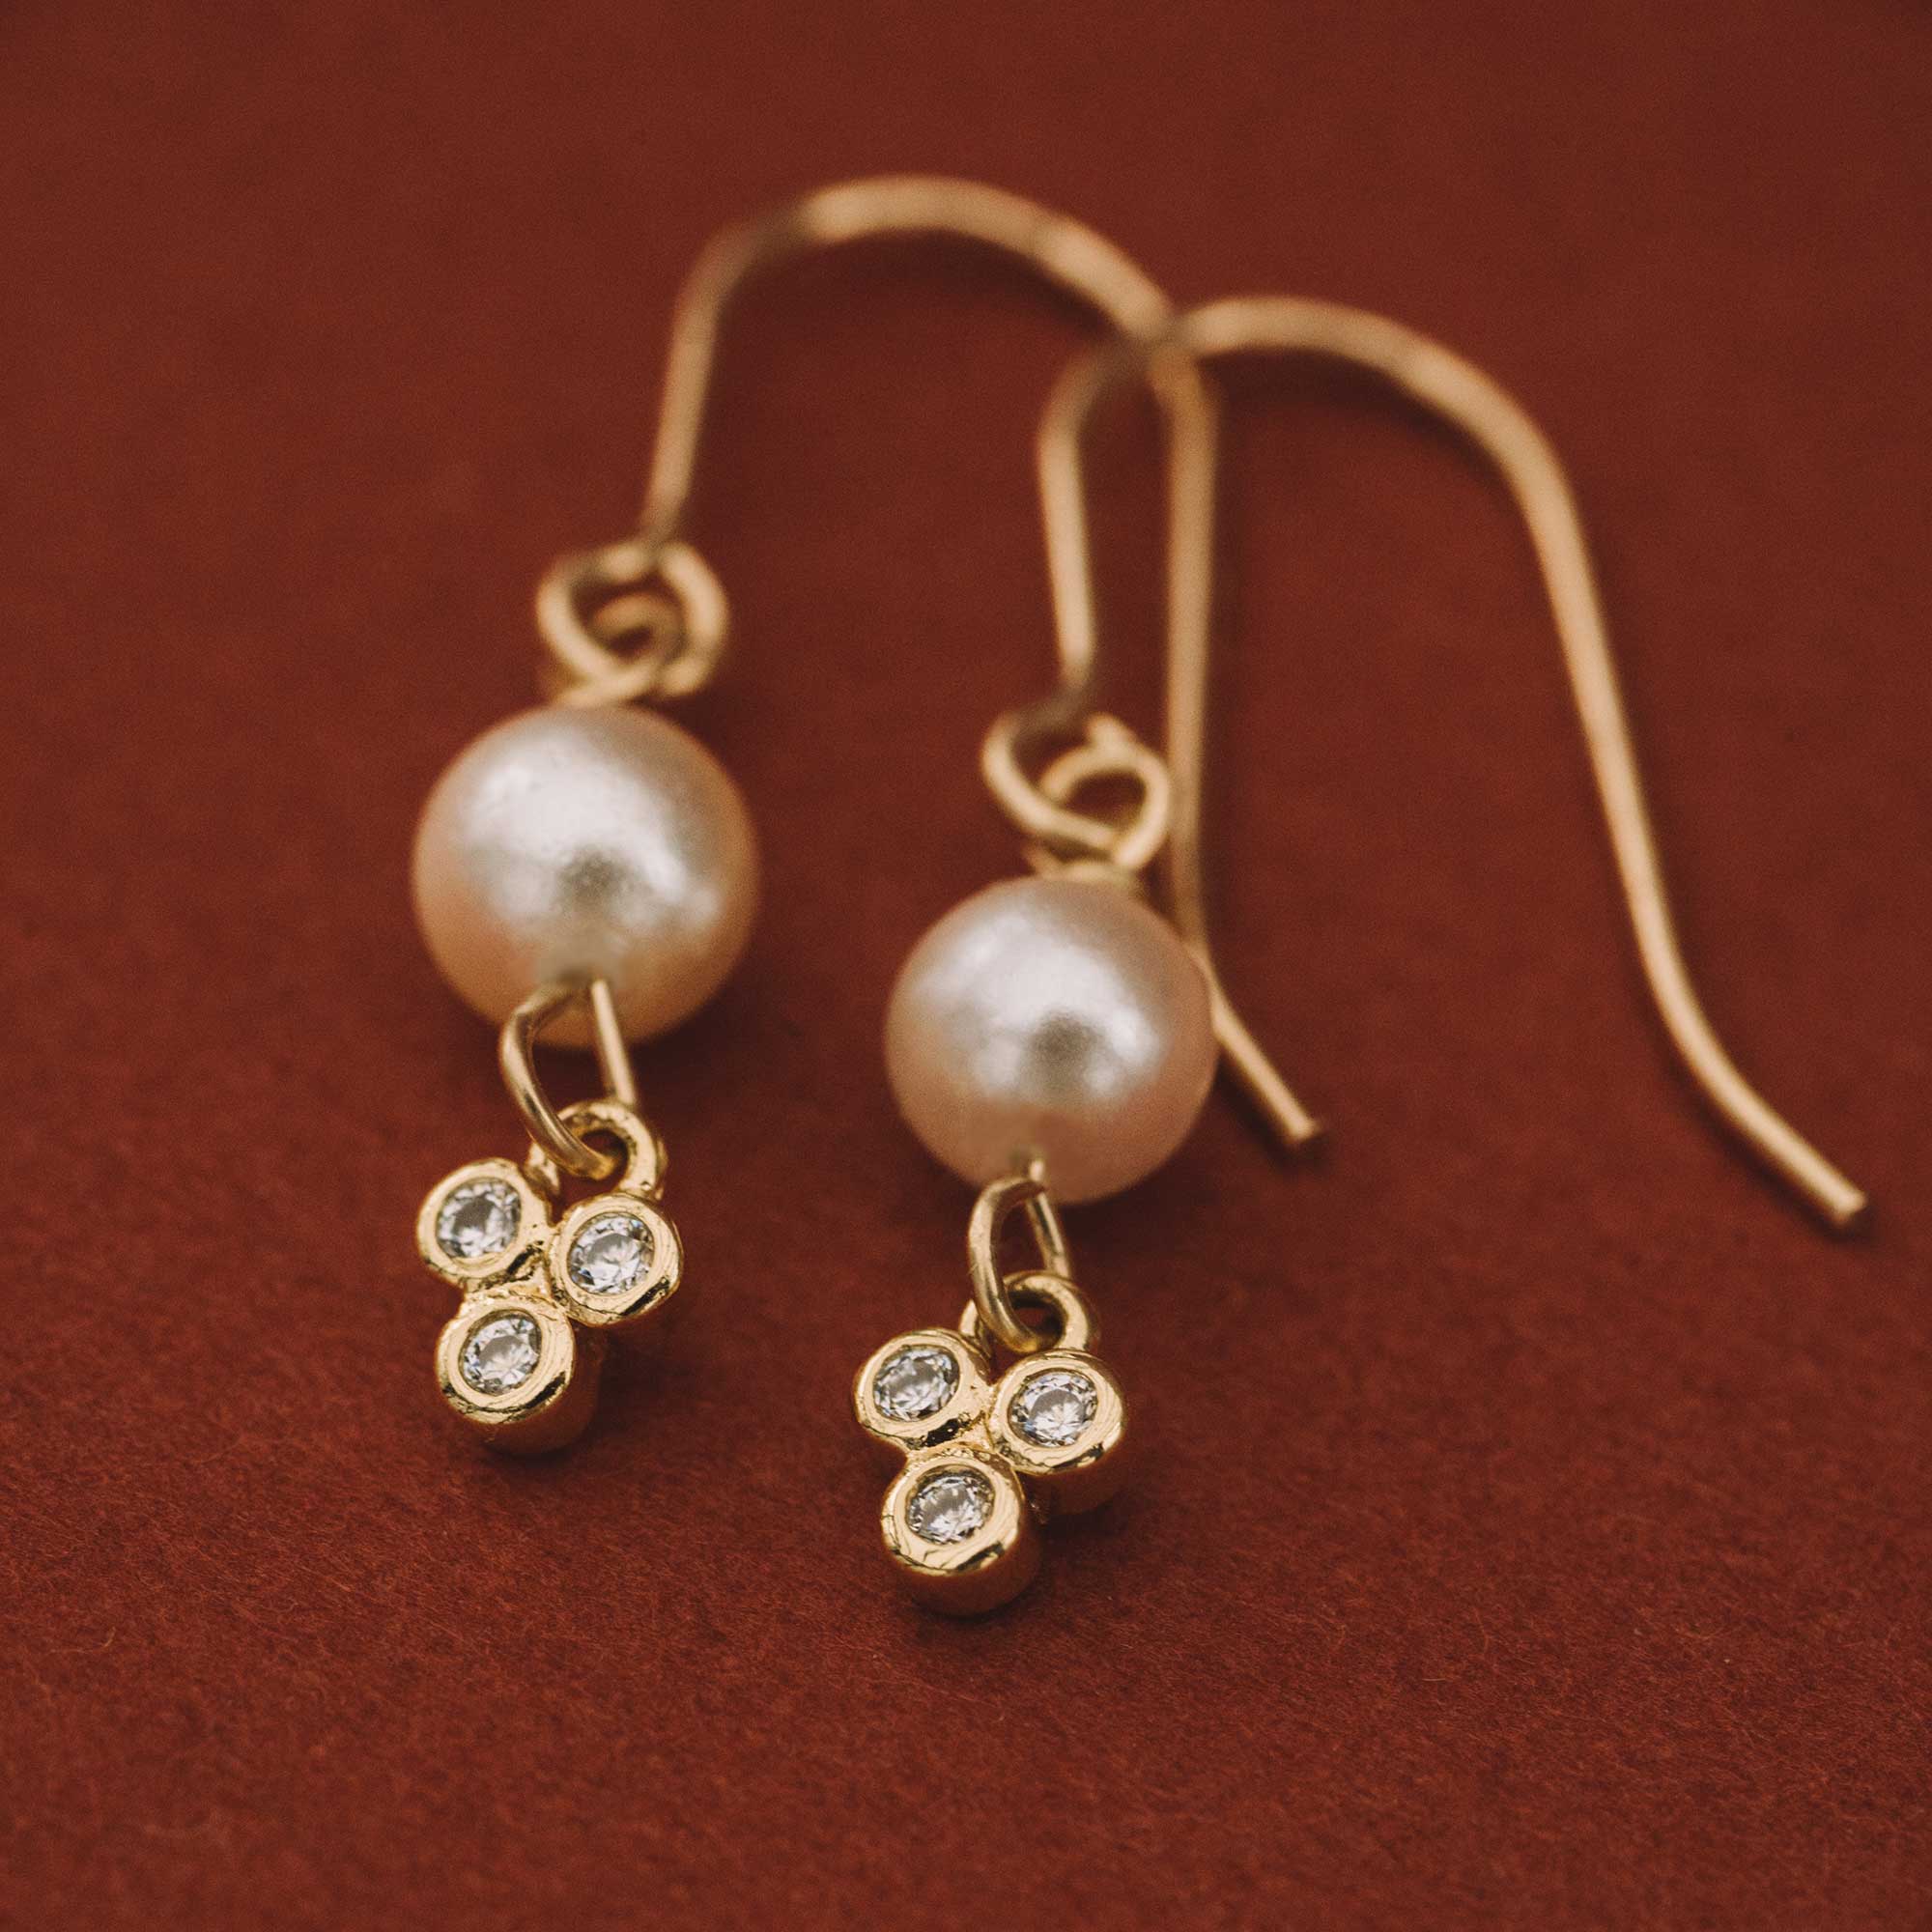 Boucles d'oreilles or rempli 14K et perles Swarovski par Sandrine Devost